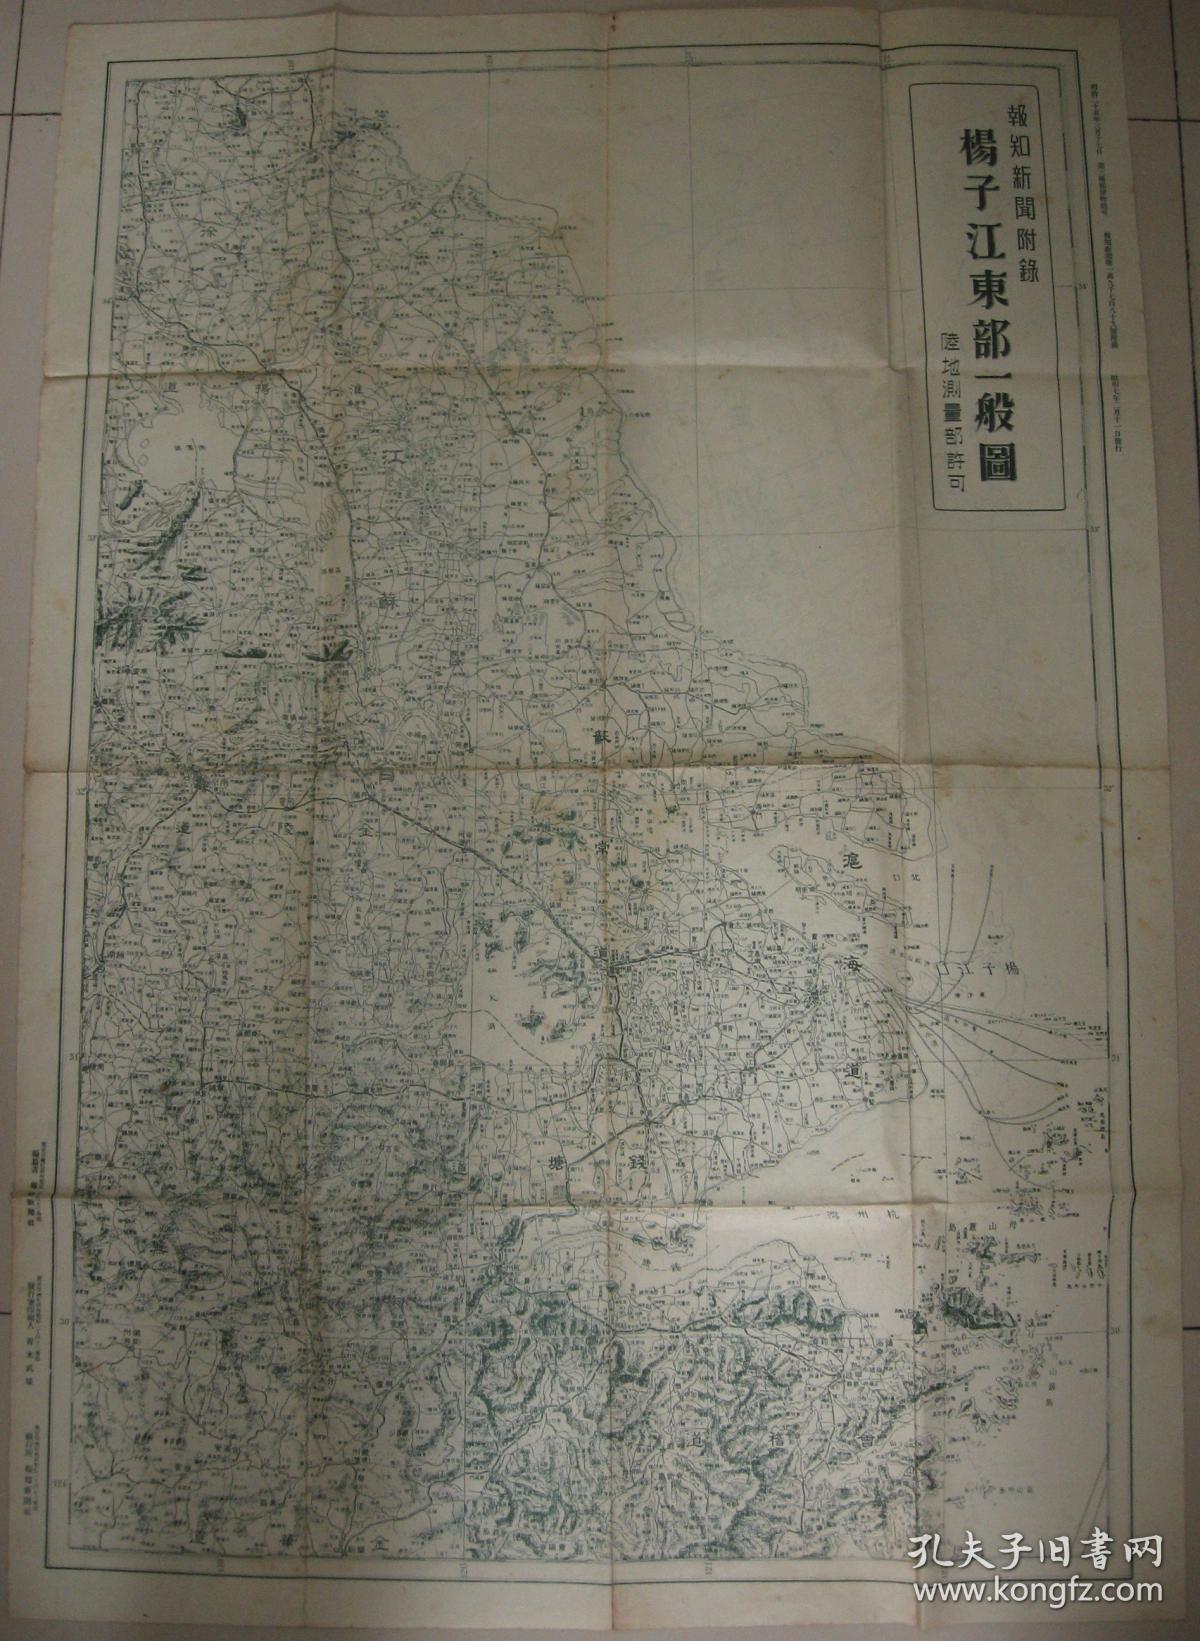 老地图  双面印 1932年 《上海市街地图和扬子江东部一般图》 附南京地图 河南洛阳图